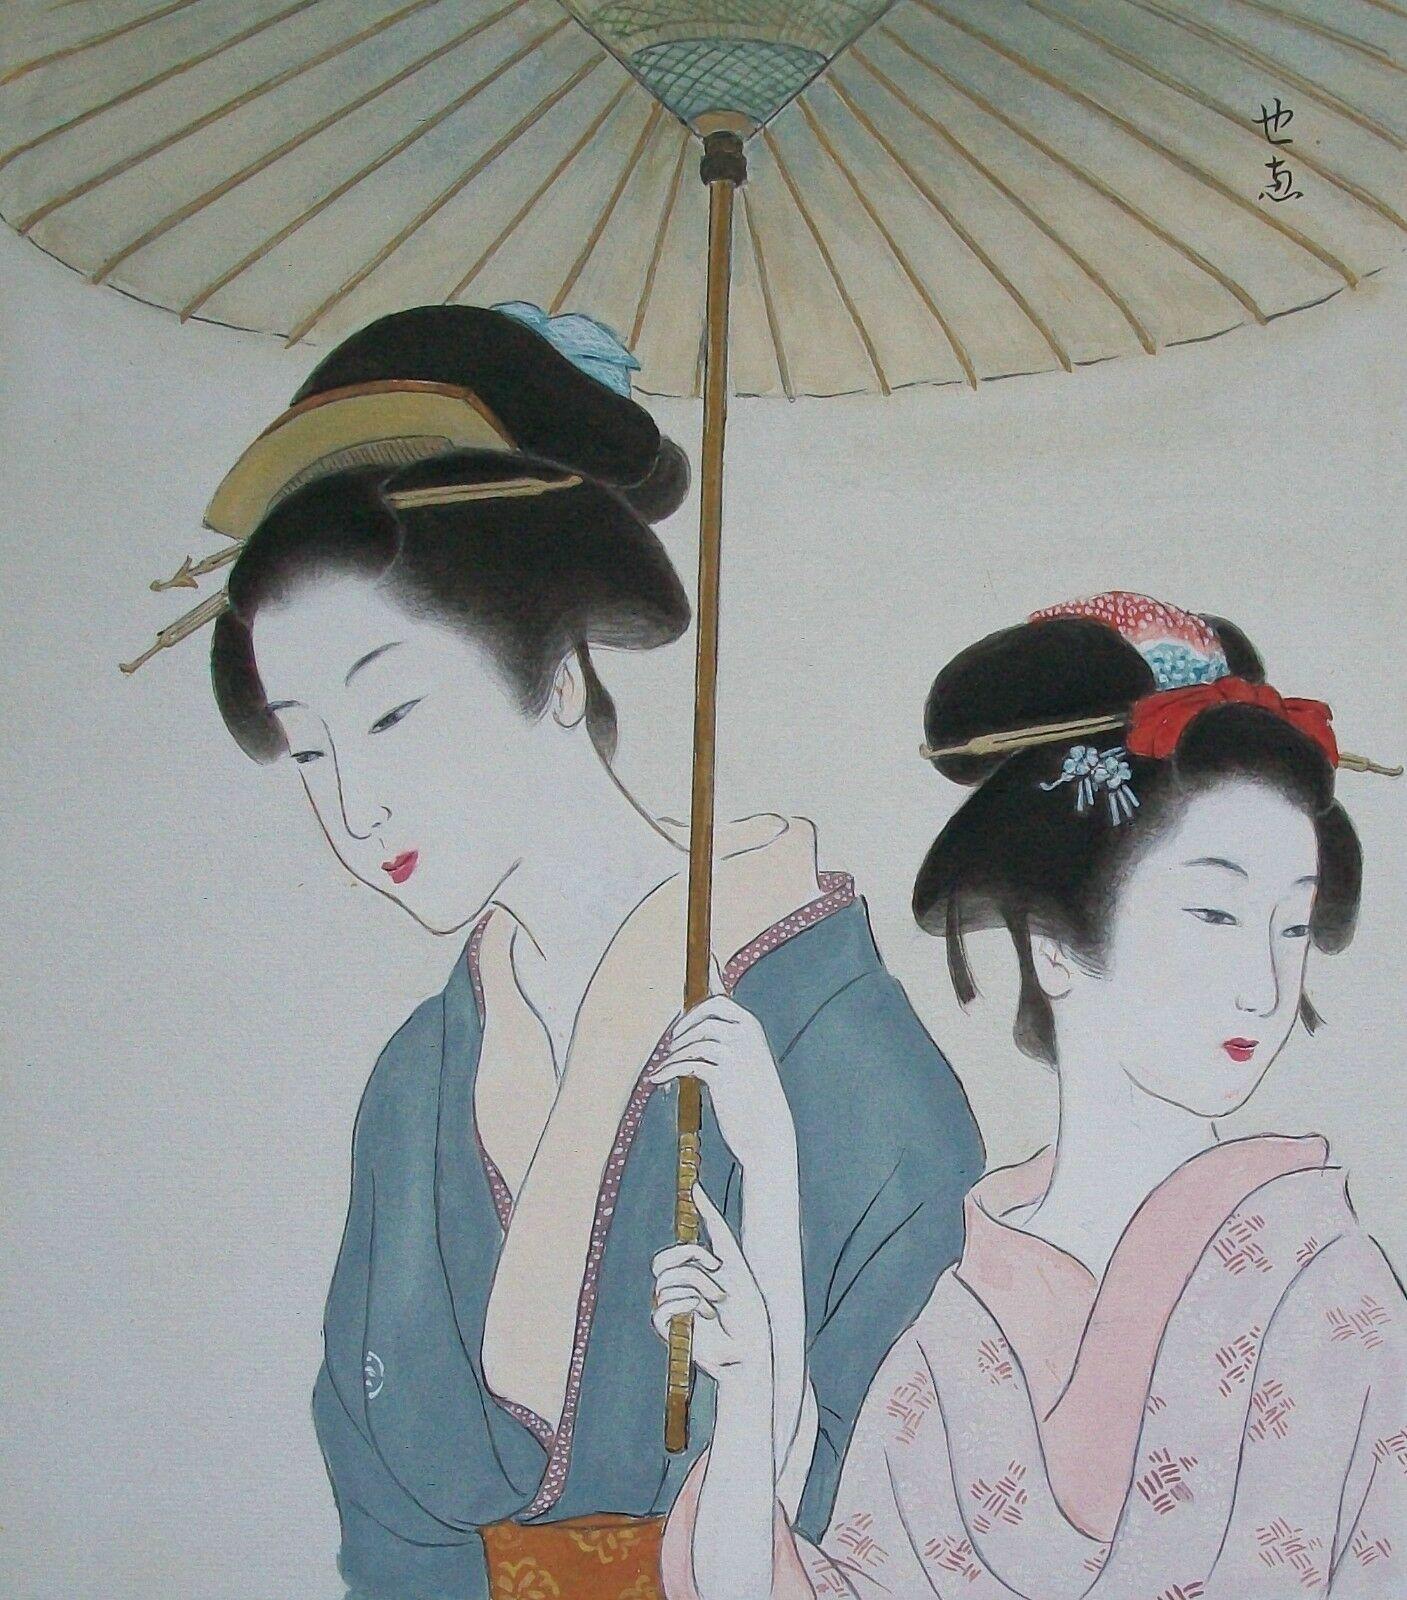 Vintage Aquarell von zwei Geisha unter einem Regenschirm - Aquarell über Graphit mit goldenem Rand - signiert oben rechts (nicht identifizierter Künstler/Macher) - ungerahmt - Japan - Ende 20. Jahrhundert. 

Ausgezeichneter Vintage-Zustand - kein